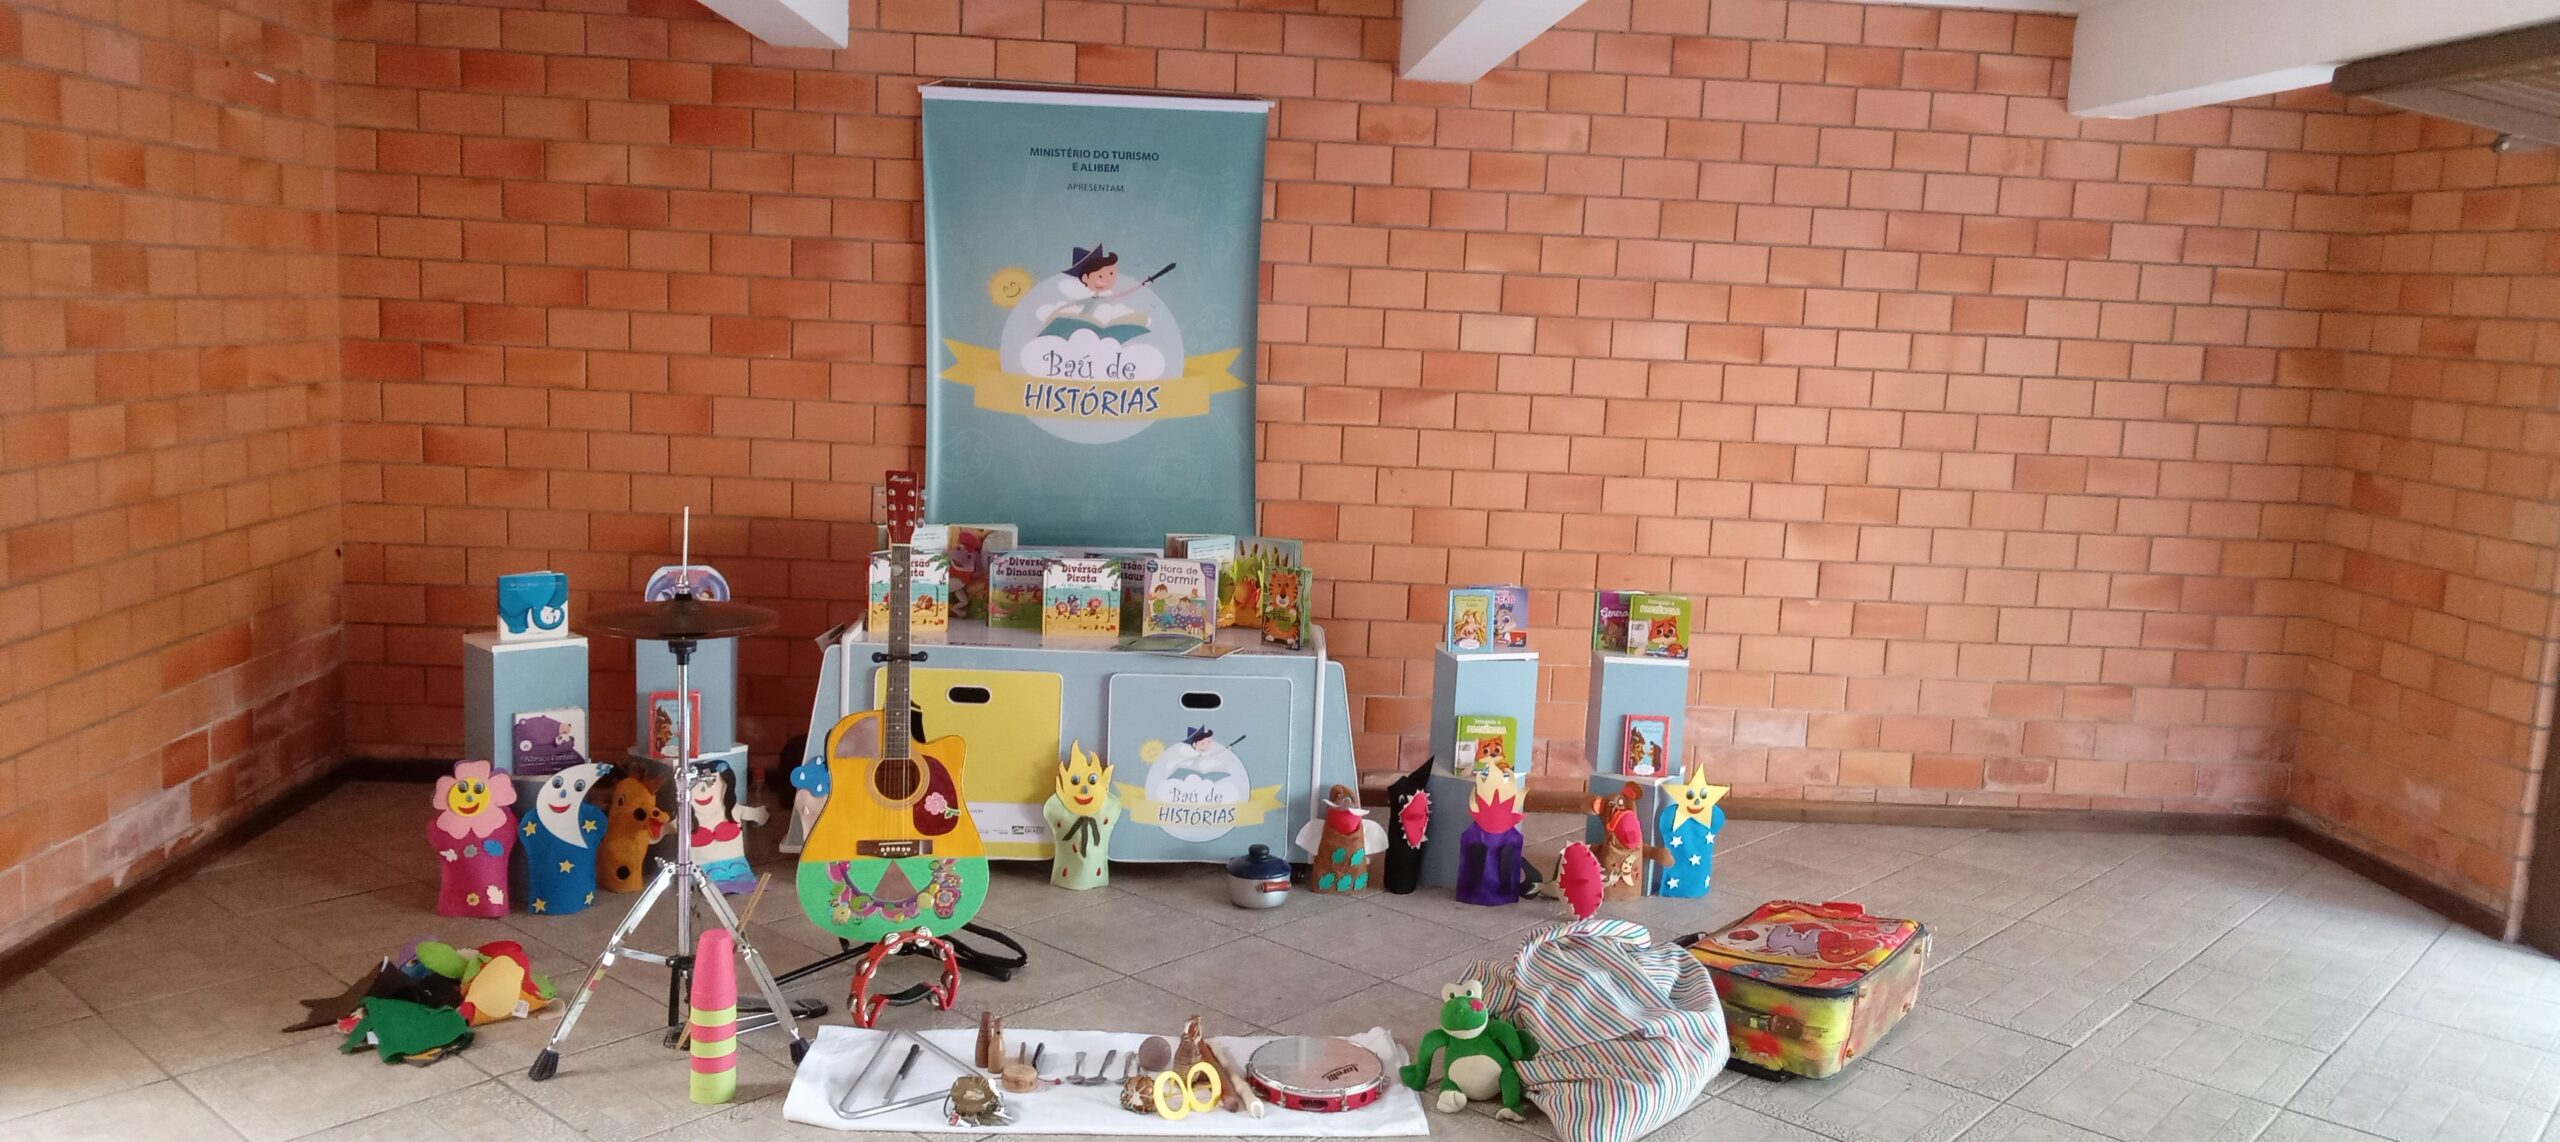 Projeto “Baú de Histórias” reforça a importância da leitura para 1.160 crianças em Porto Alegre